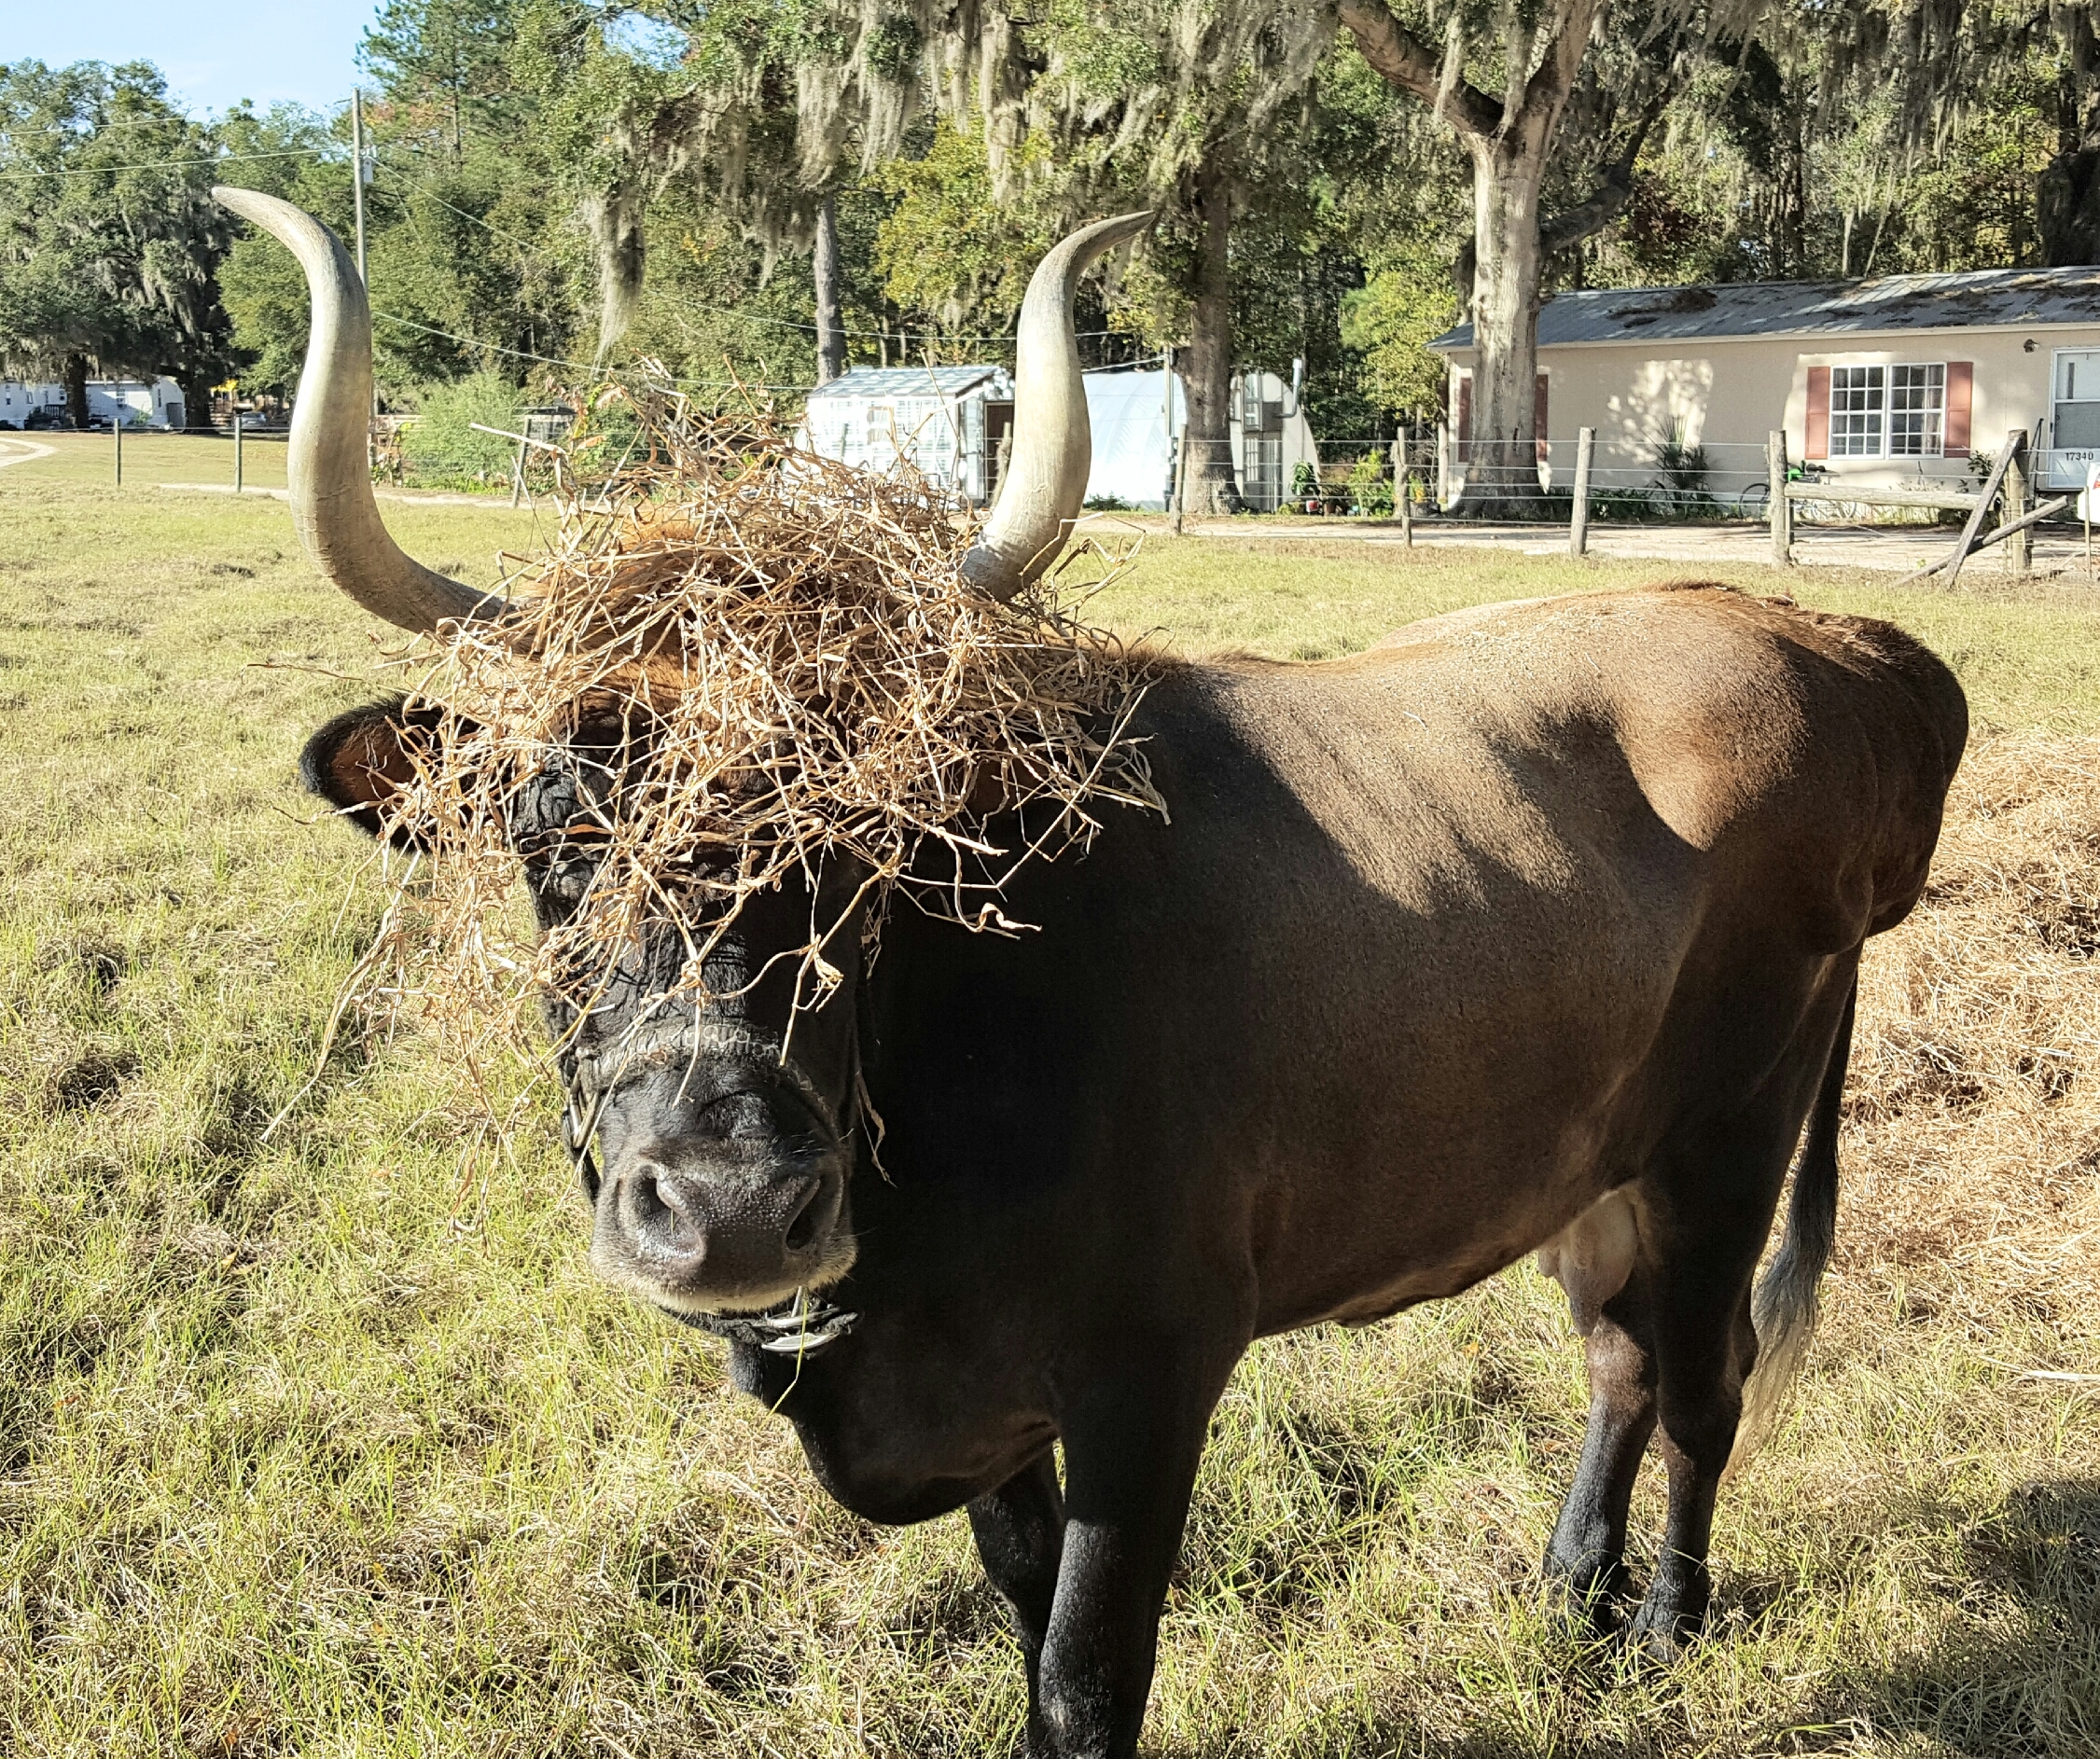 Rajani wears her hay crown in style